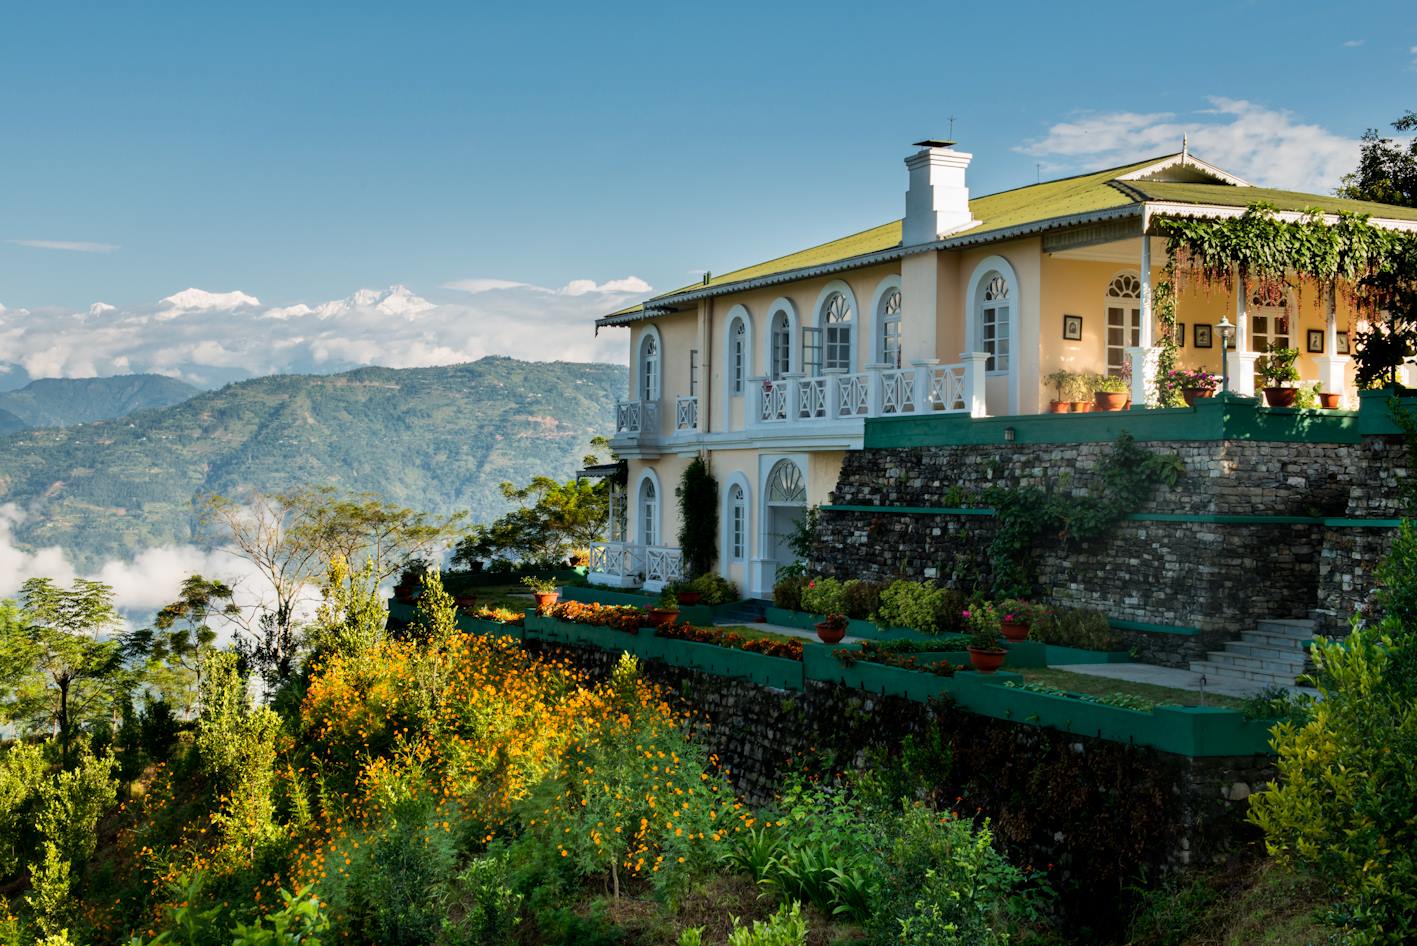 Glenburn Tea Estate And Boutique Hotel, Darjeeling